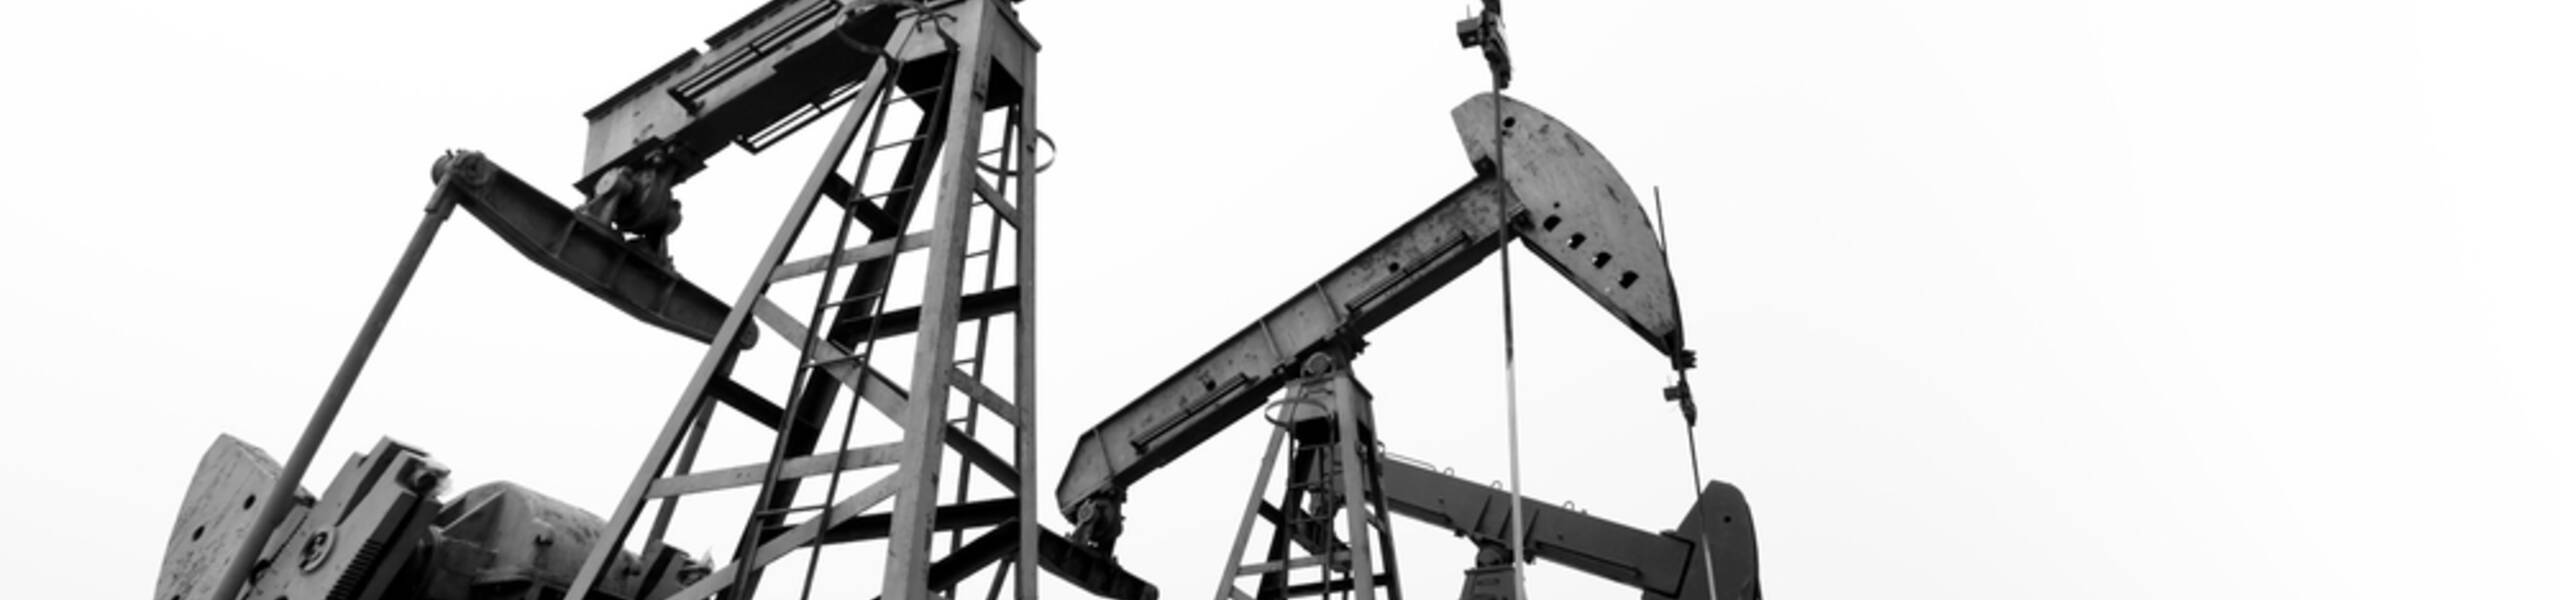 브렌트유: OPEC+의 개입 가능성